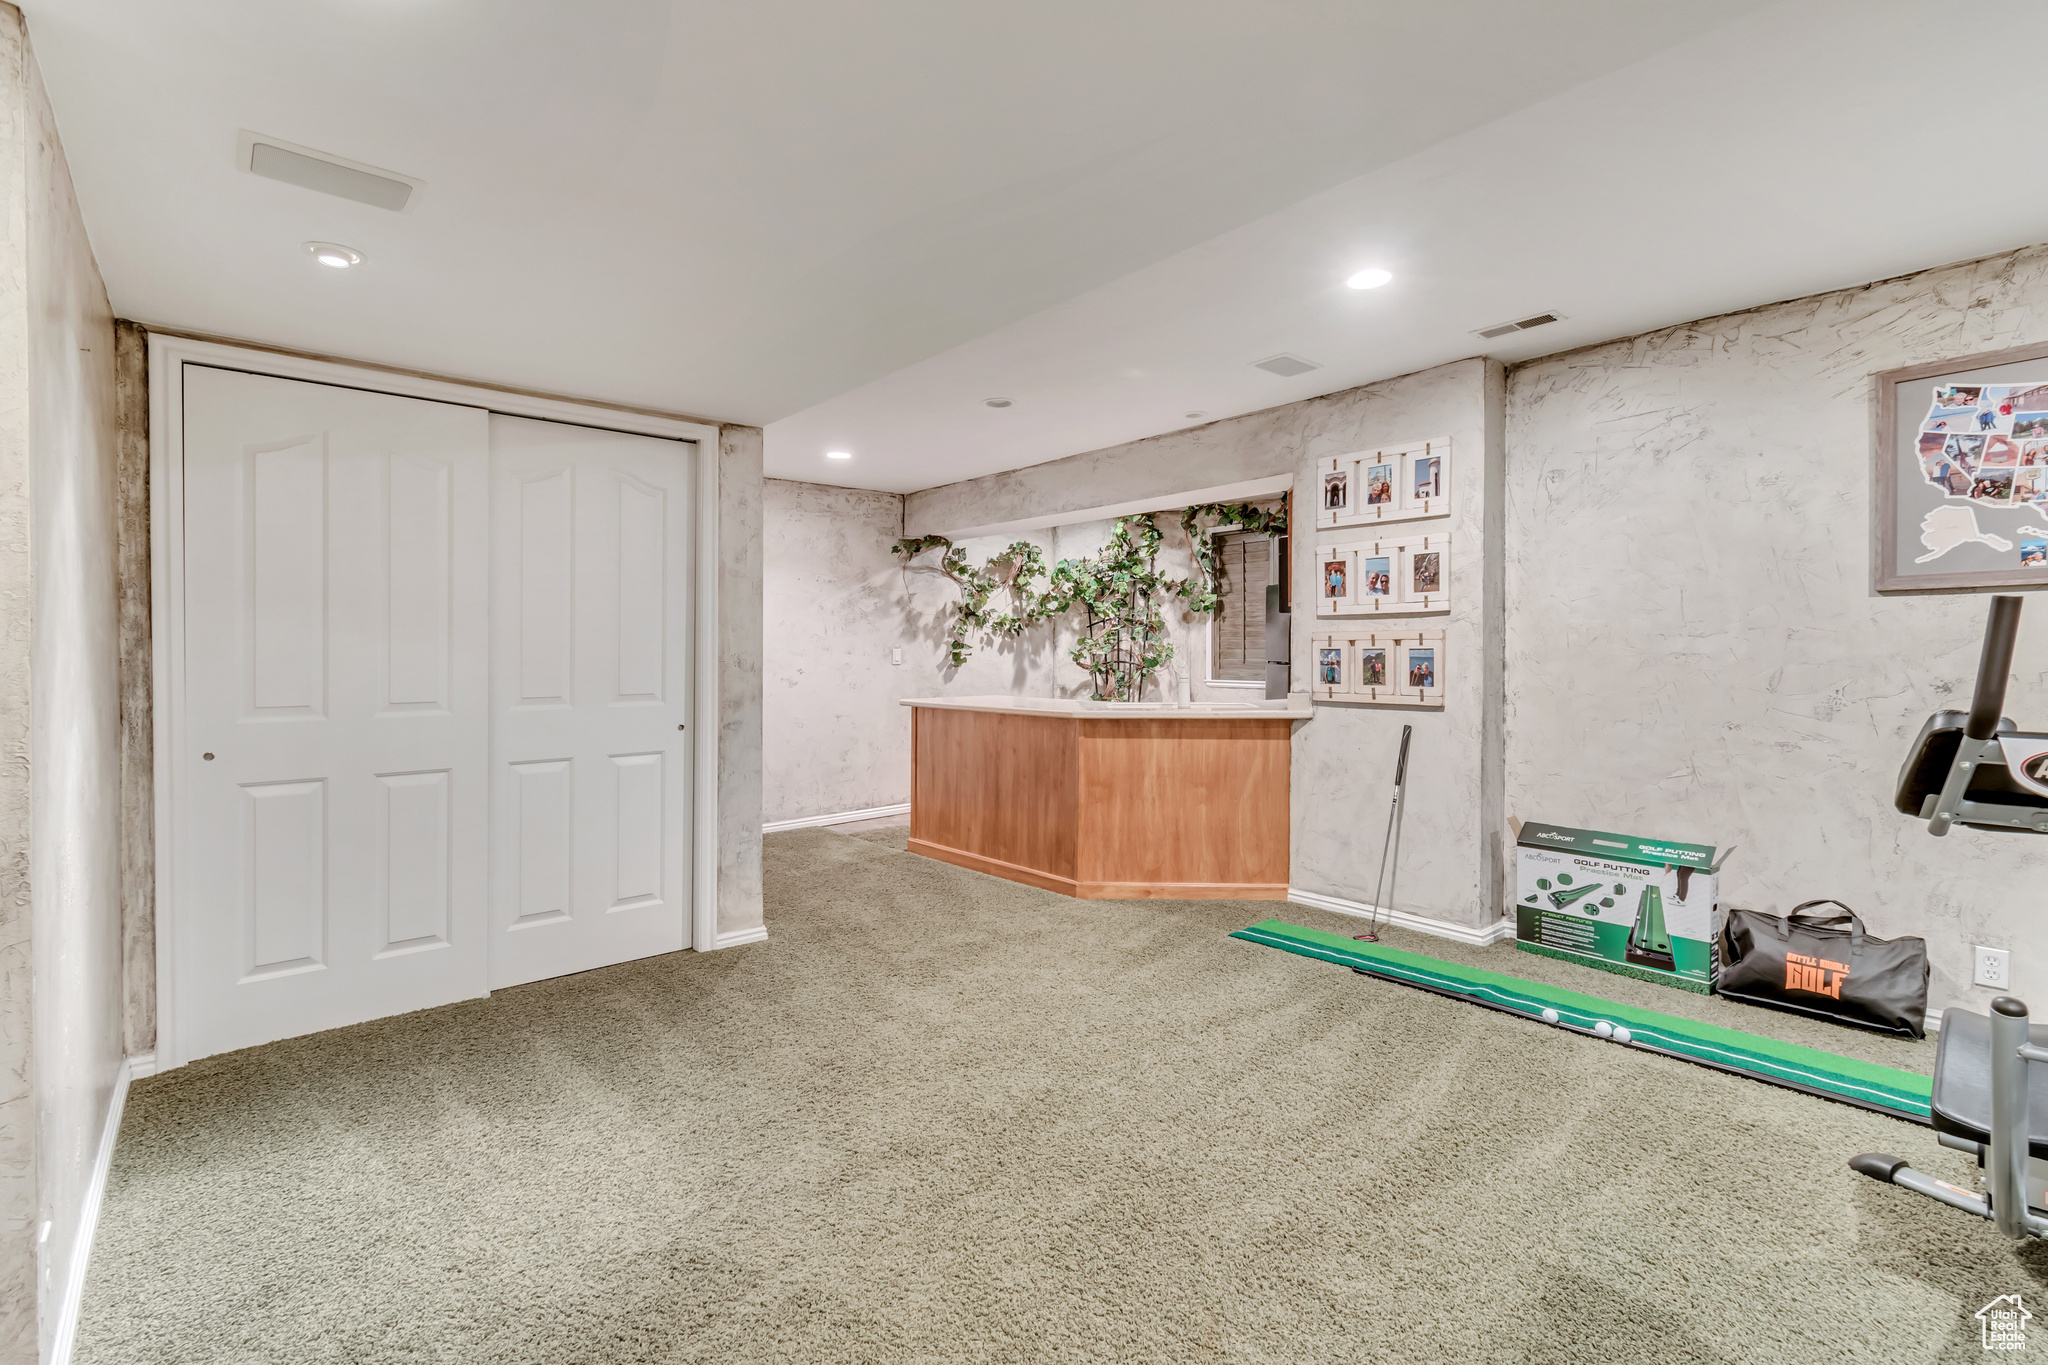 Interior space with carpet flooring